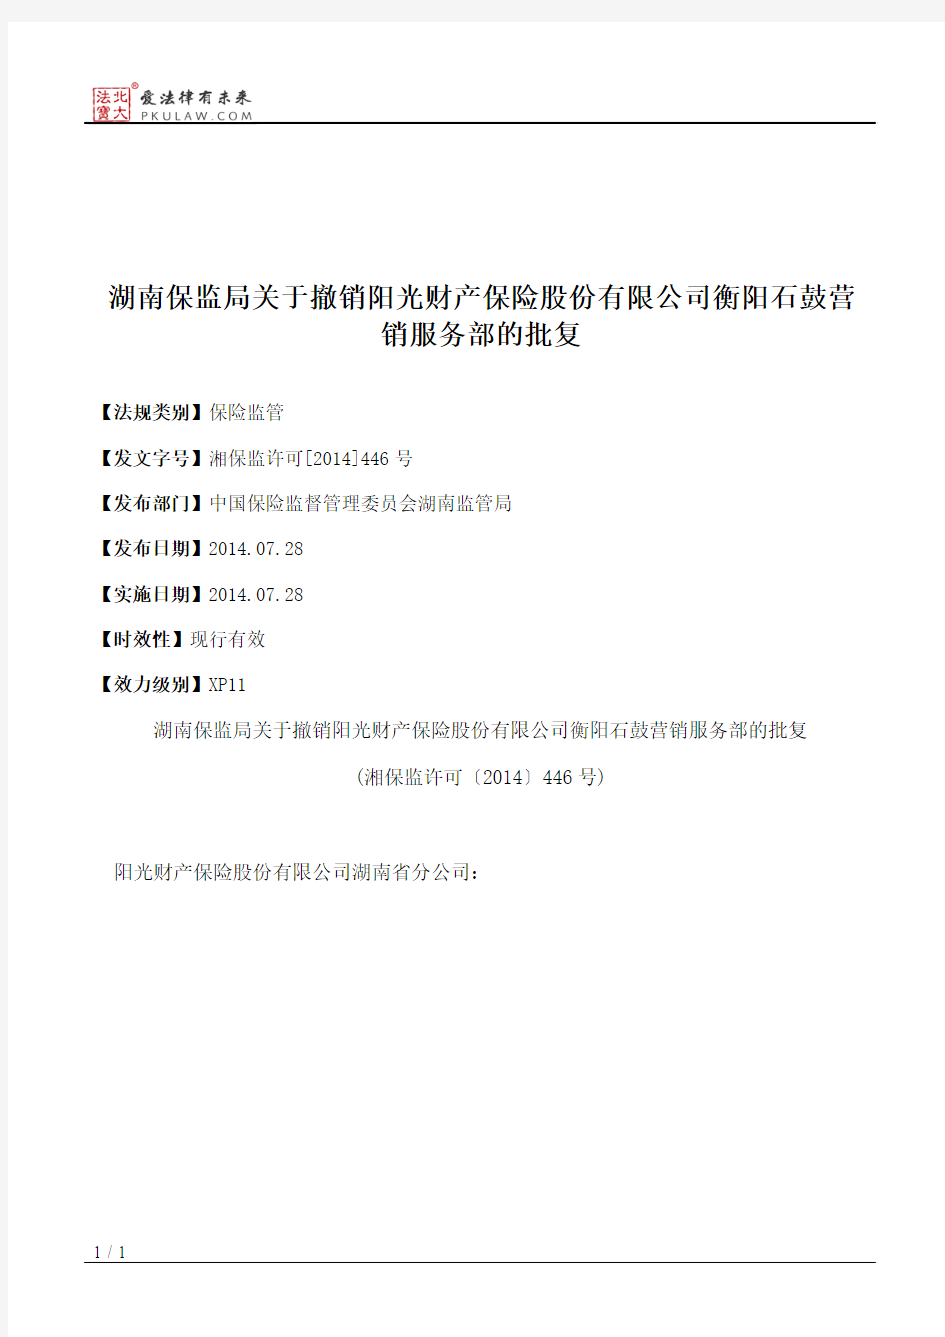 湖南保监局关于撤销阳光财产保险股份有限公司衡阳石鼓营销服务部的批复